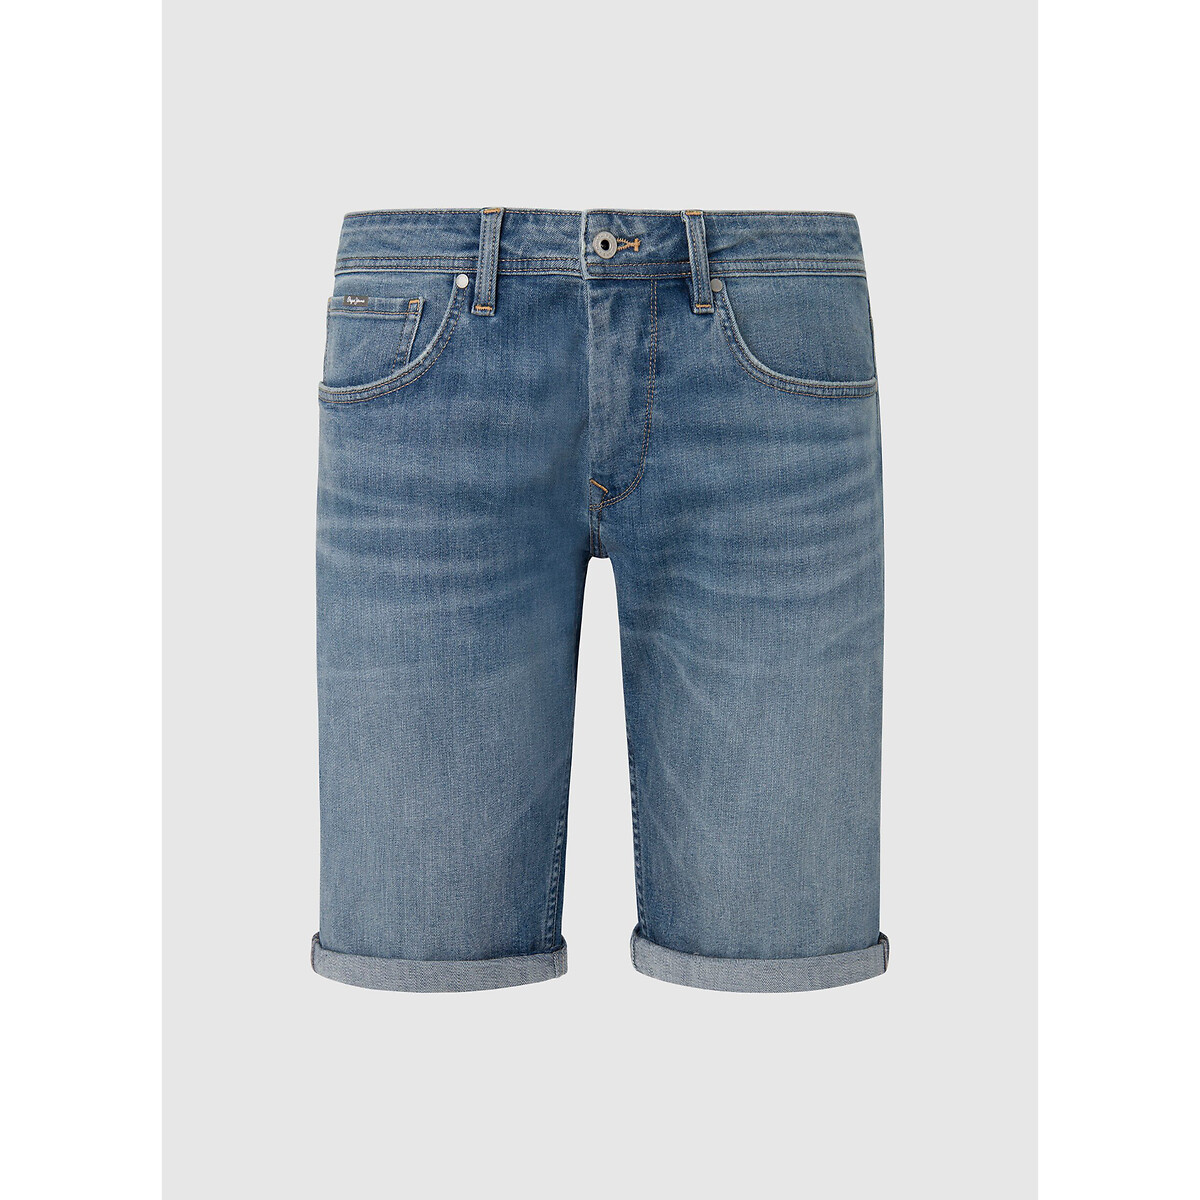 Шорты из джинсовой ткани прямого покроя 28 (US) синий куртка прямого покроя из джинсовой ткани s синий